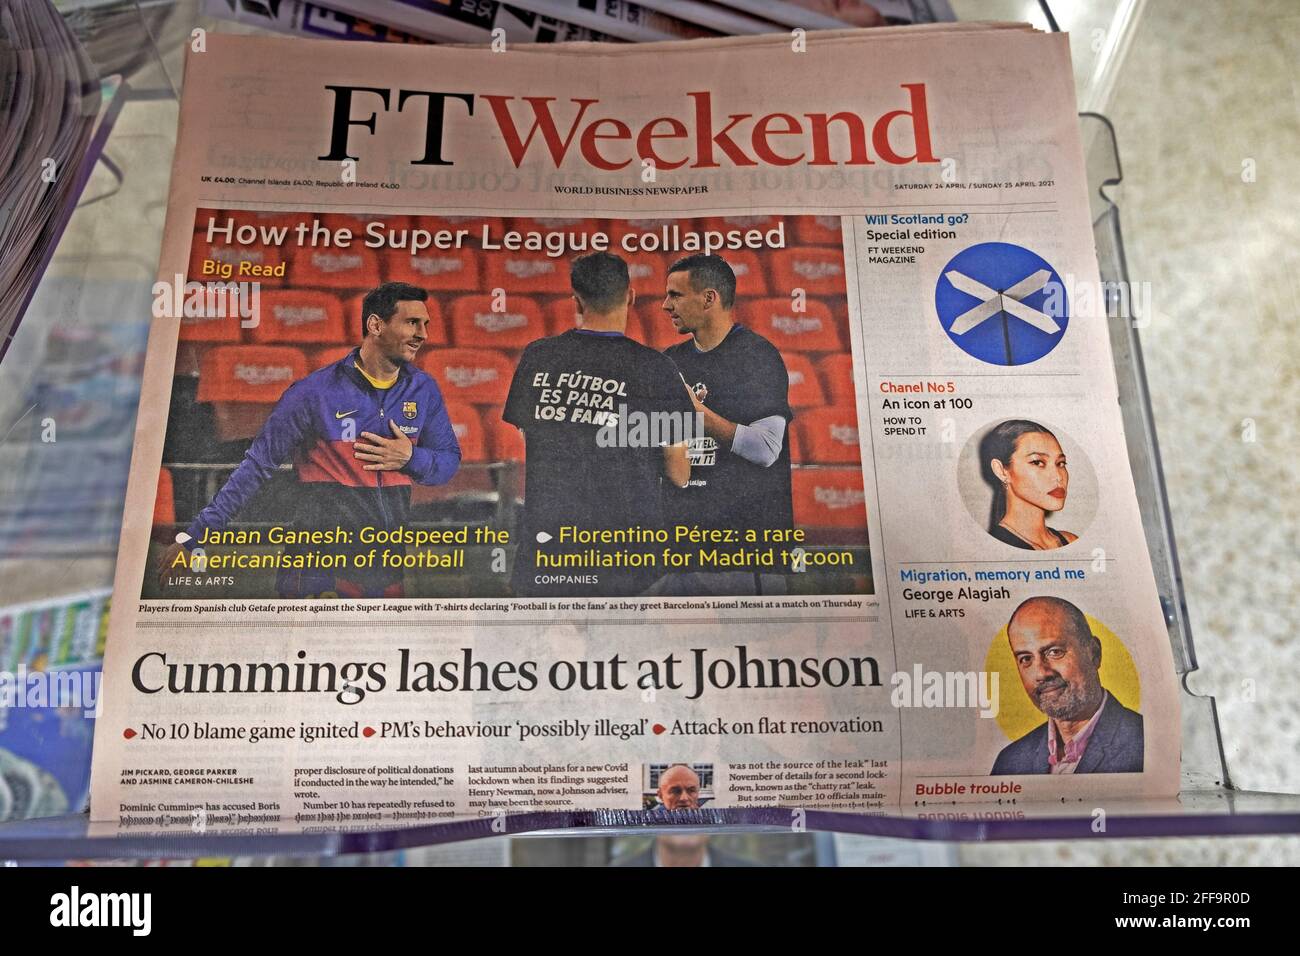 FT Weekend prima pagina giornale titolo 'come la Super League Collapsed' sports football Financial Times articolo 24 aprile 2021 Londra Inghilterra Regno Unito Foto Stock